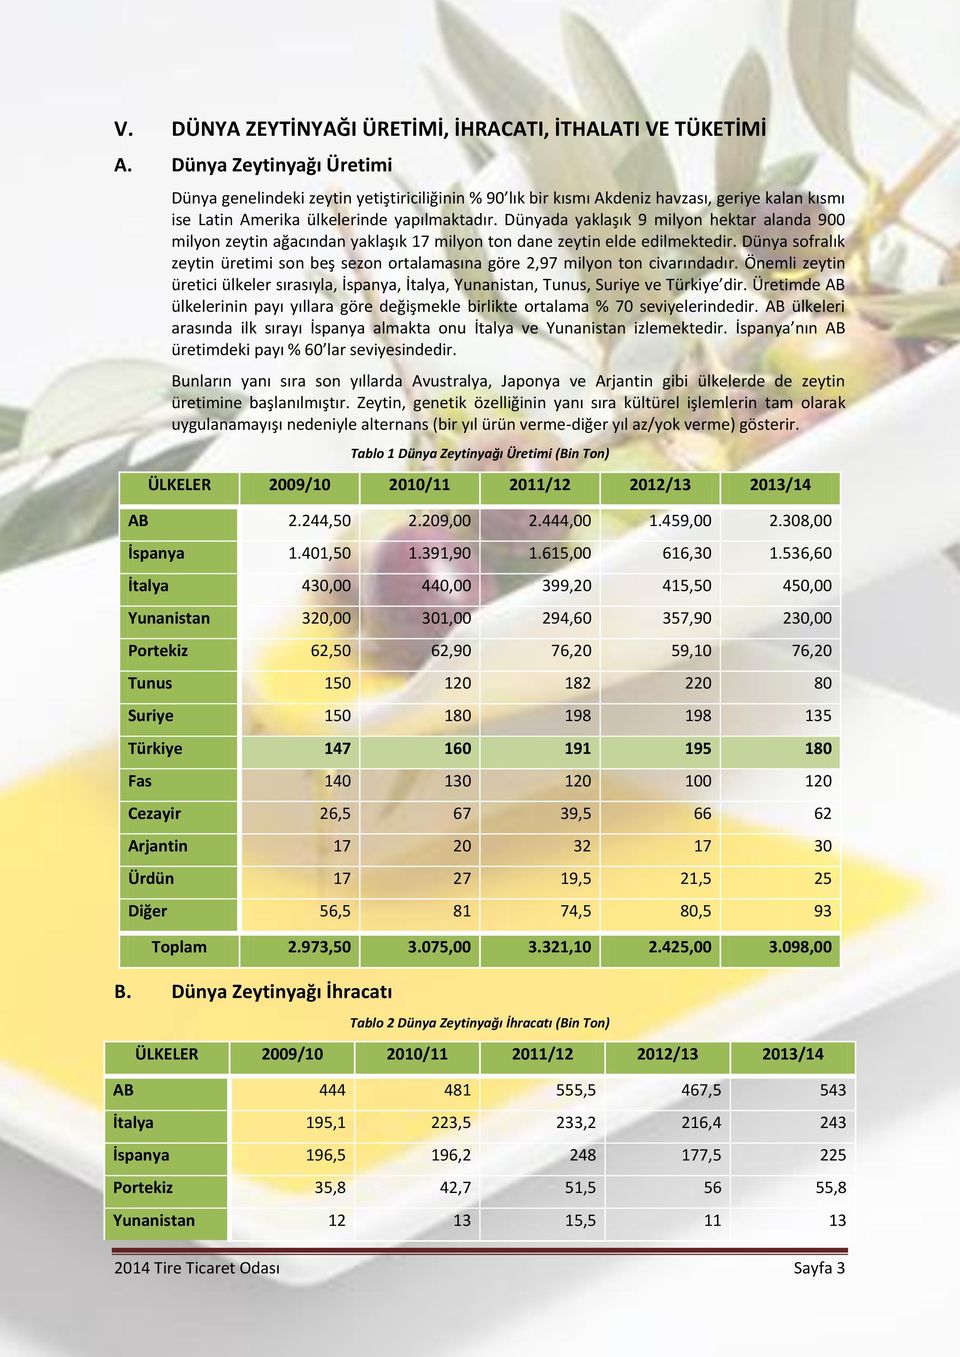 Dünyada yaklaşık 9 milyon hektar alanda 900 milyon zeytin ağacından yaklaşık 17 milyon ton dane zeytin elde edilmektedir.